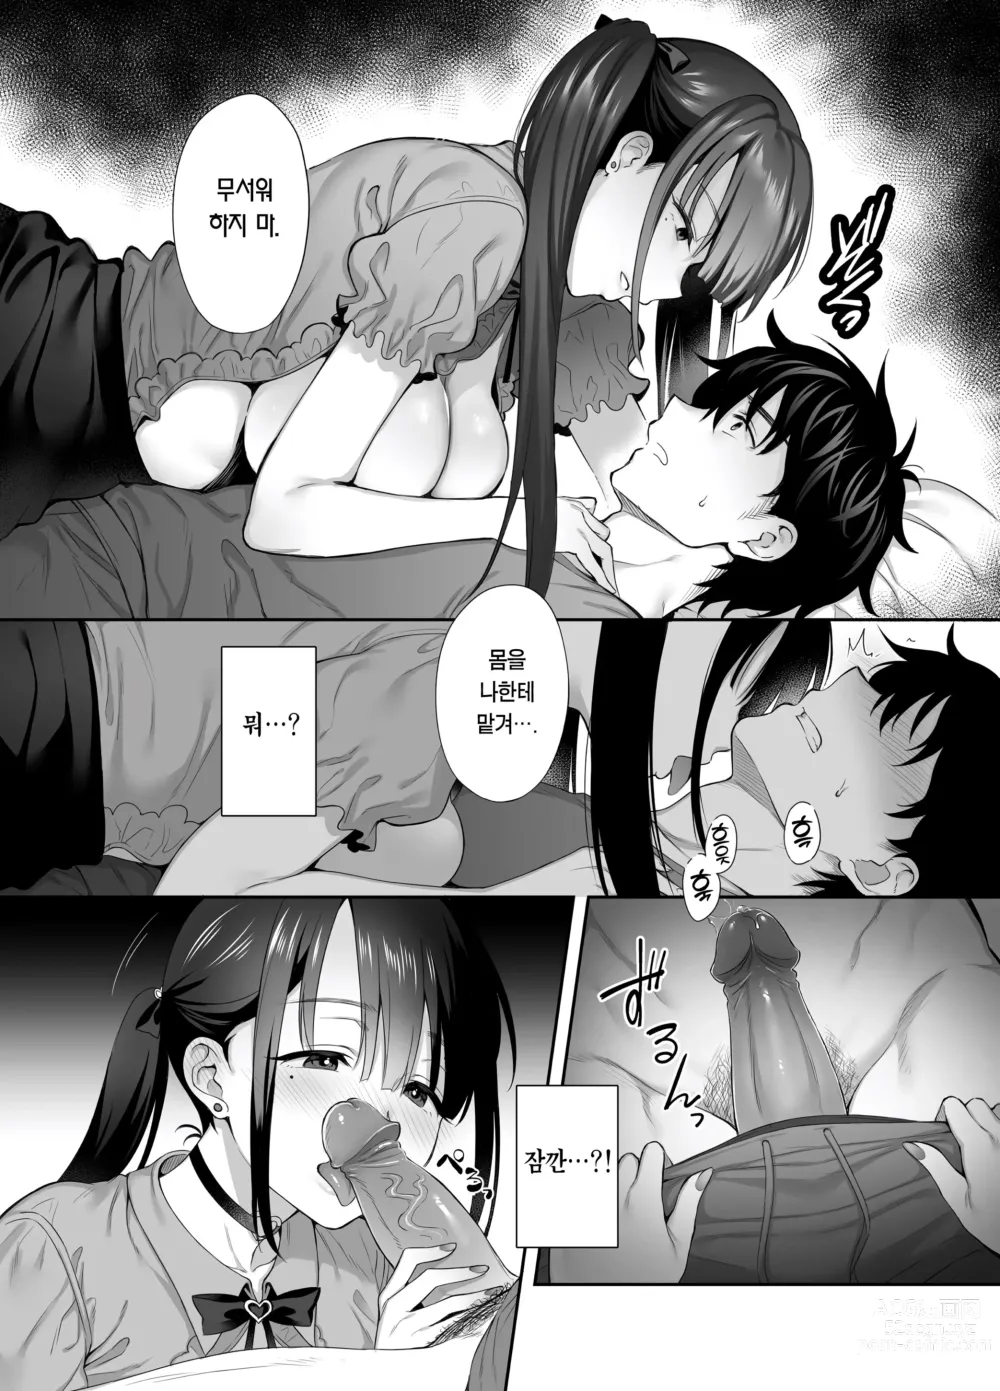 Page 12 of doujinshi 폐허에서 지뢰녀랑 밤새 질내사정 섹스한 이야기 2 (decensored)